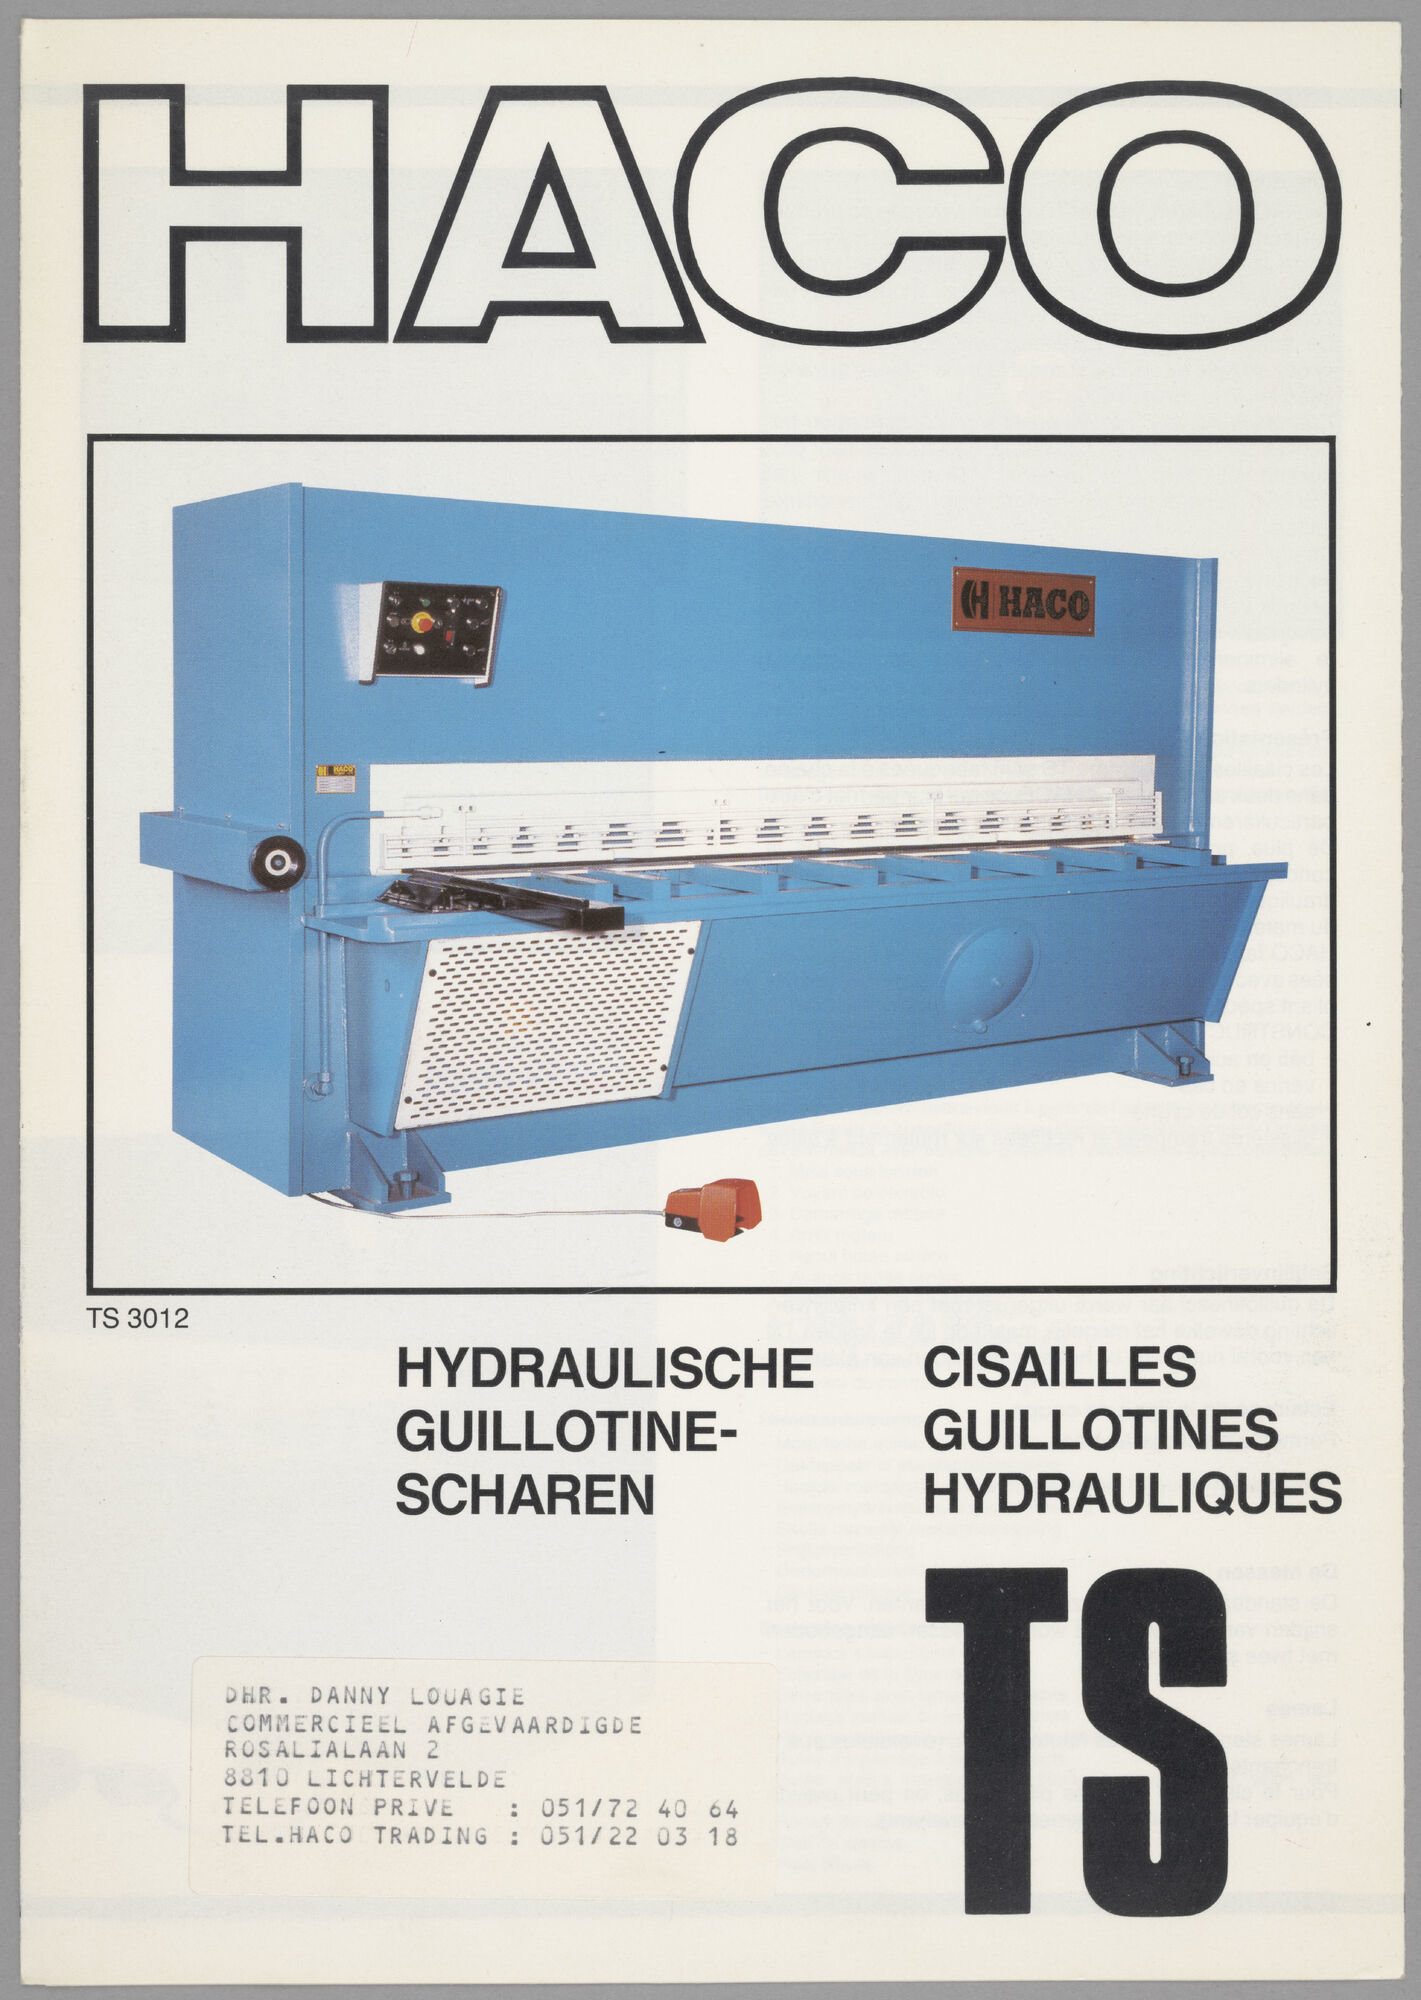 Productfolder met hydraulische guillotine-scharen van het merk HACO